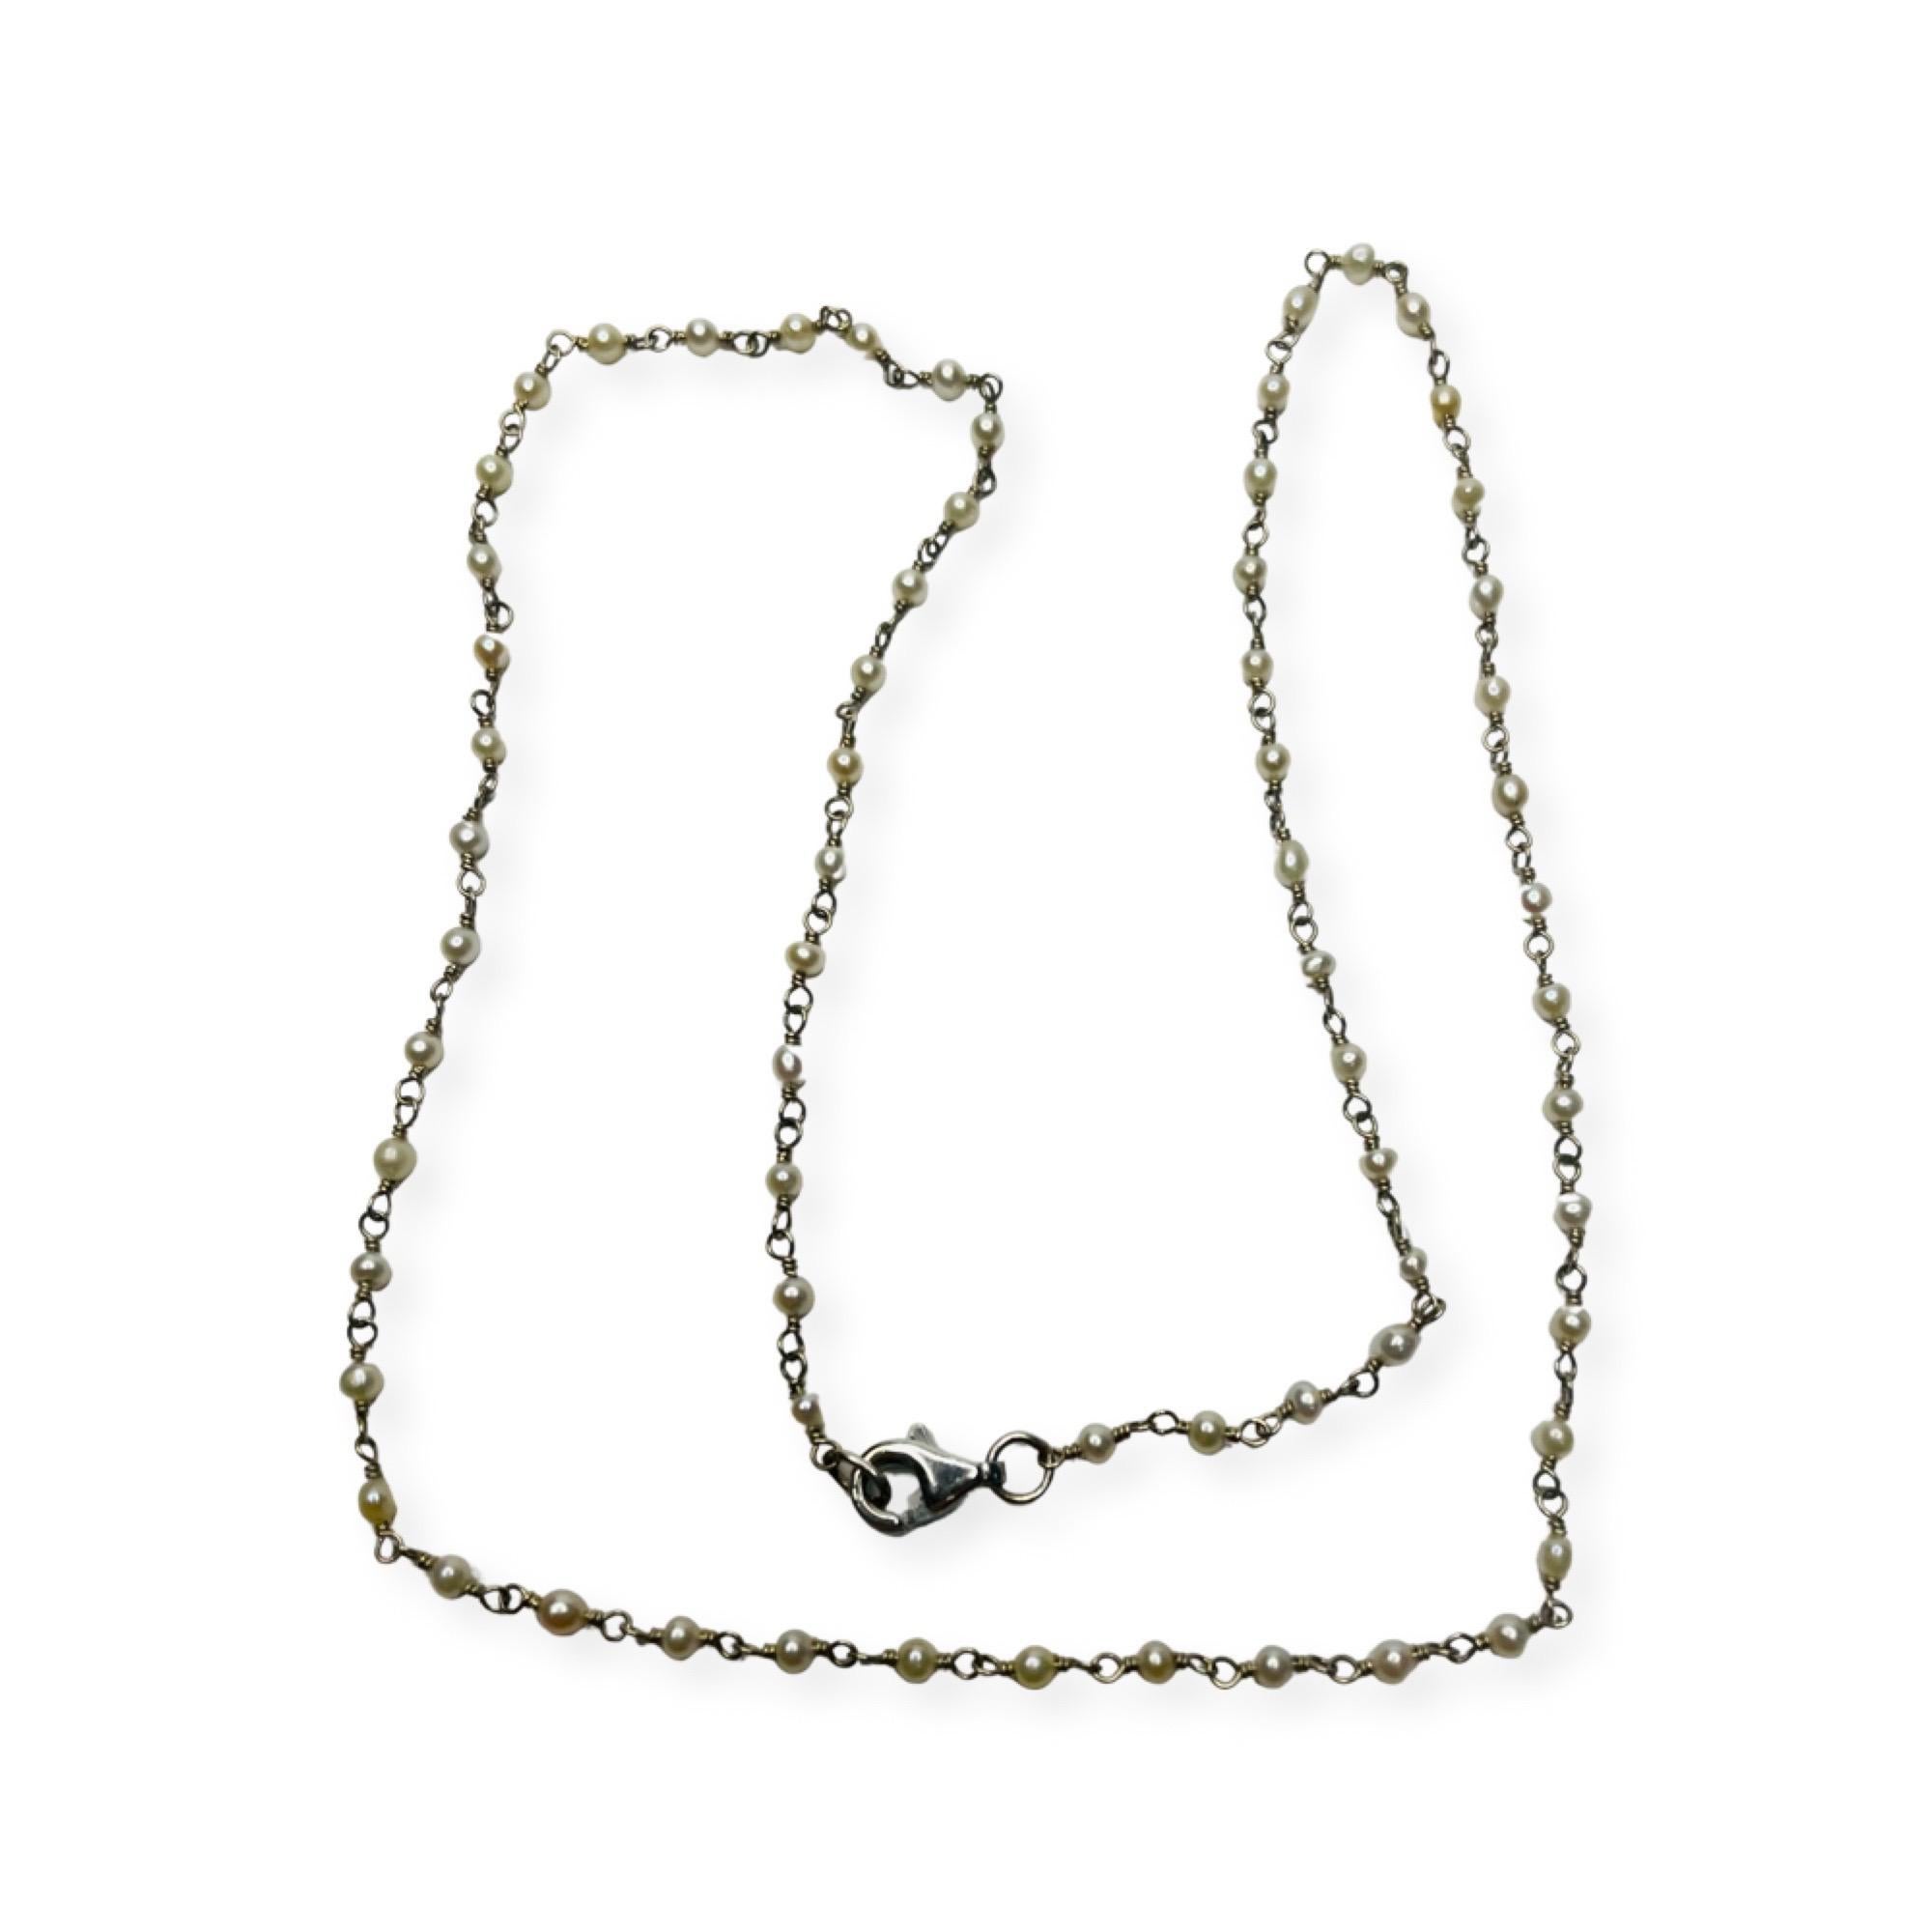 Lithos 18K Weißgold 2,0 mm Saatgut  Perlenkette.   Die 2,0 mm großen japanischen Akoya-Perlen sind gebohrt und mit 18-karätigem Draht verbunden. Durch die Perle wird ein gerader Draht gezogen, der an beiden Enden verdreht und mit einem Ring